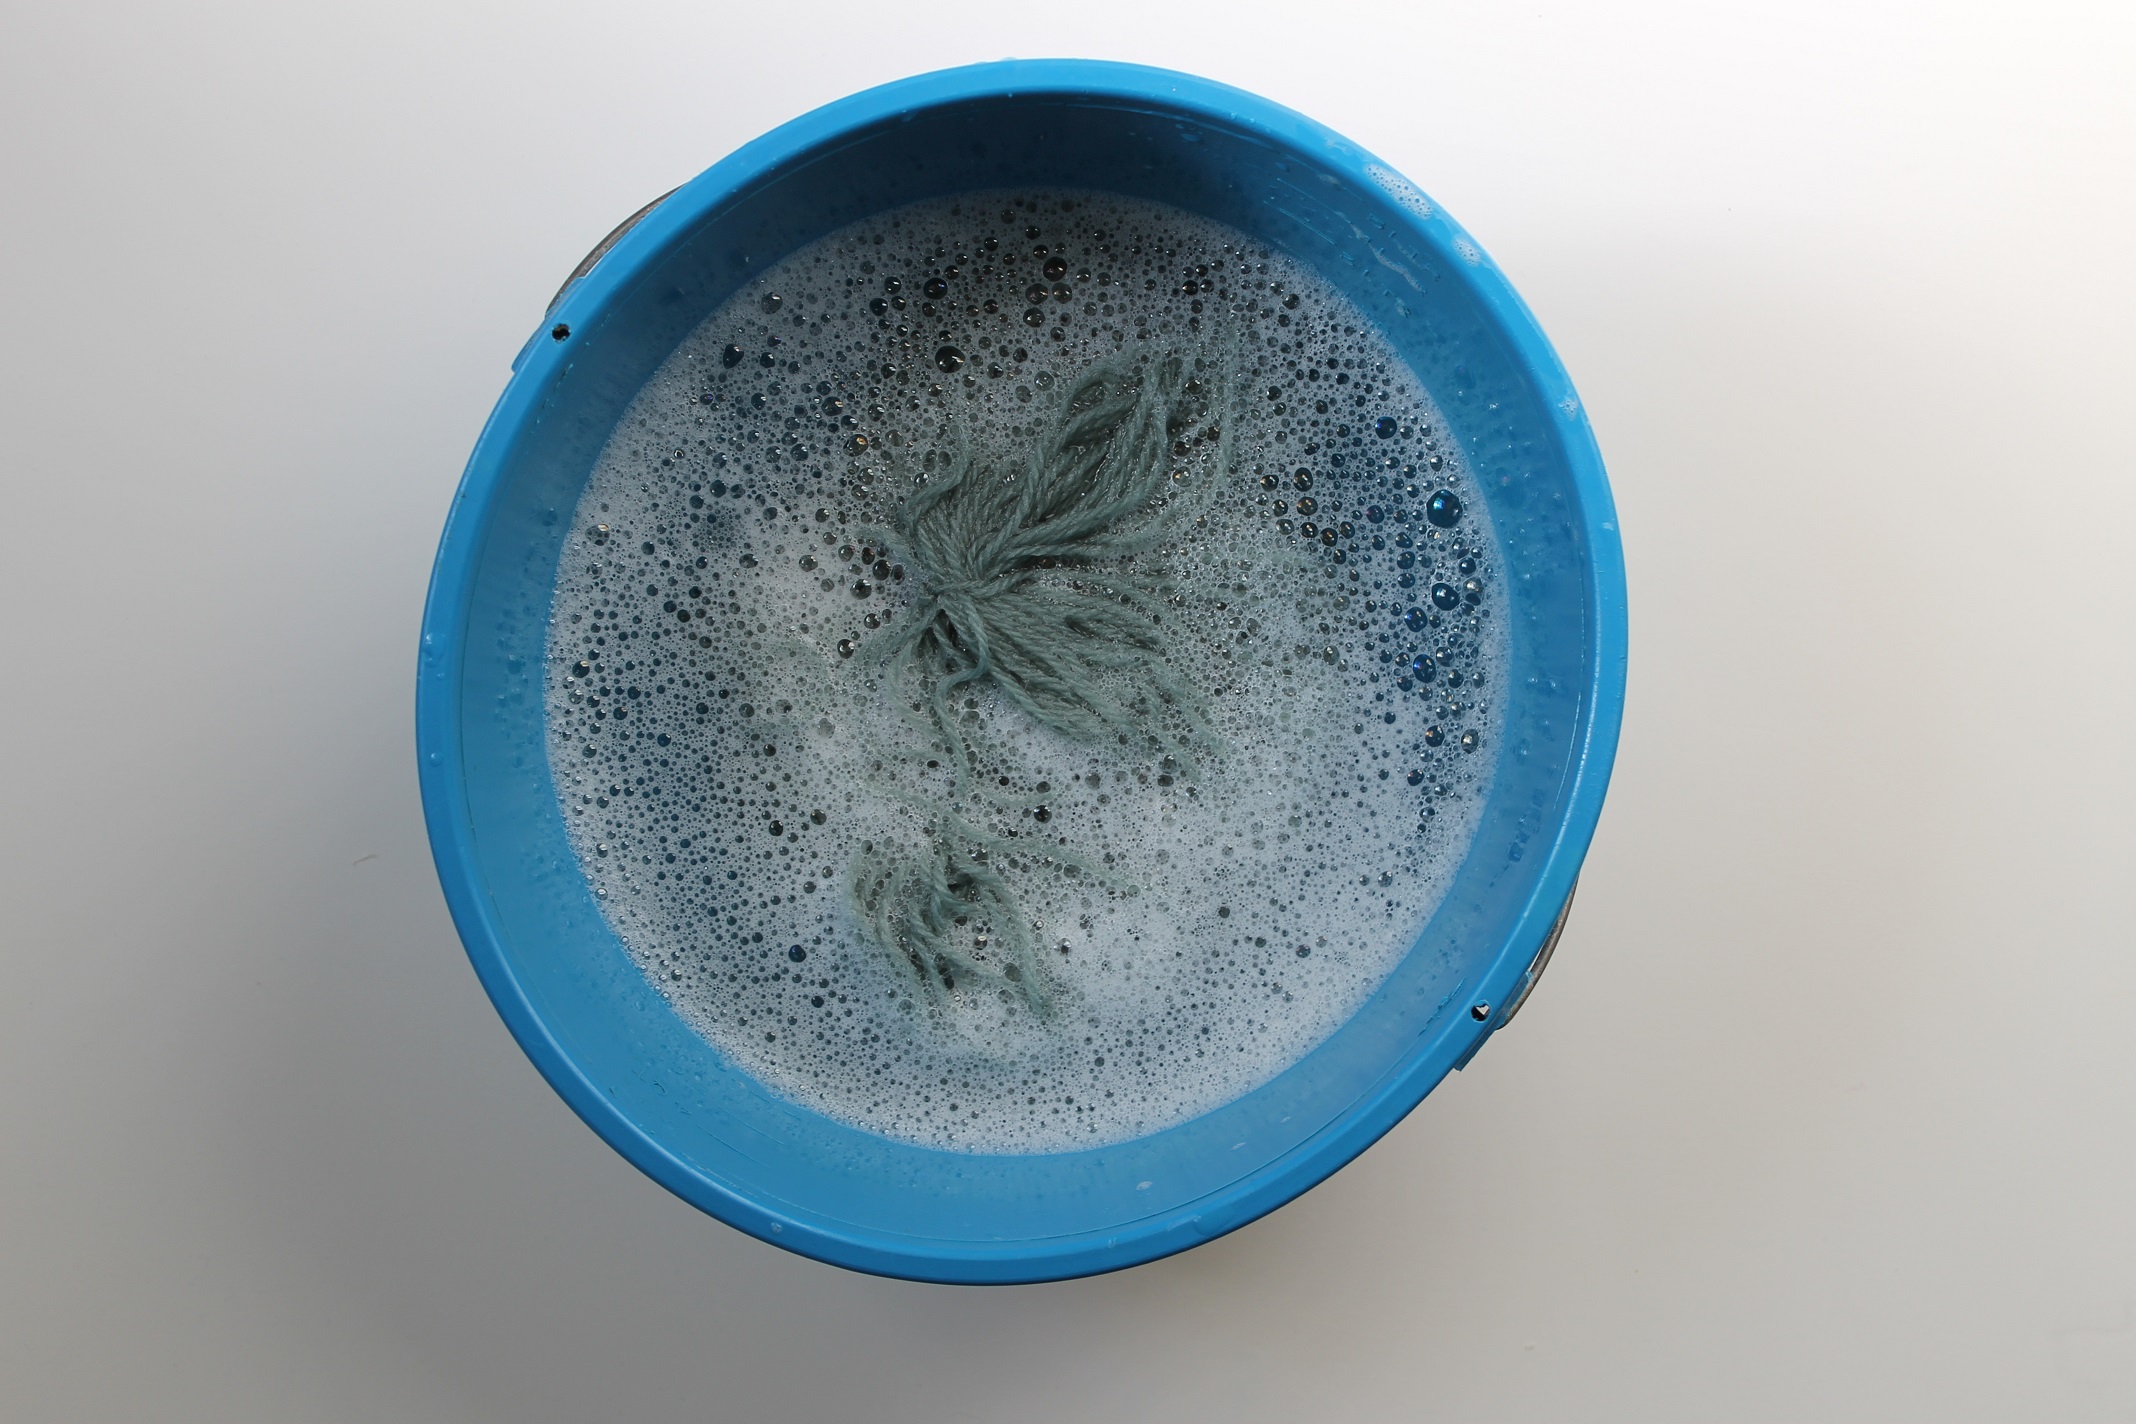 Washing coned yarn: Submerging it in Basin